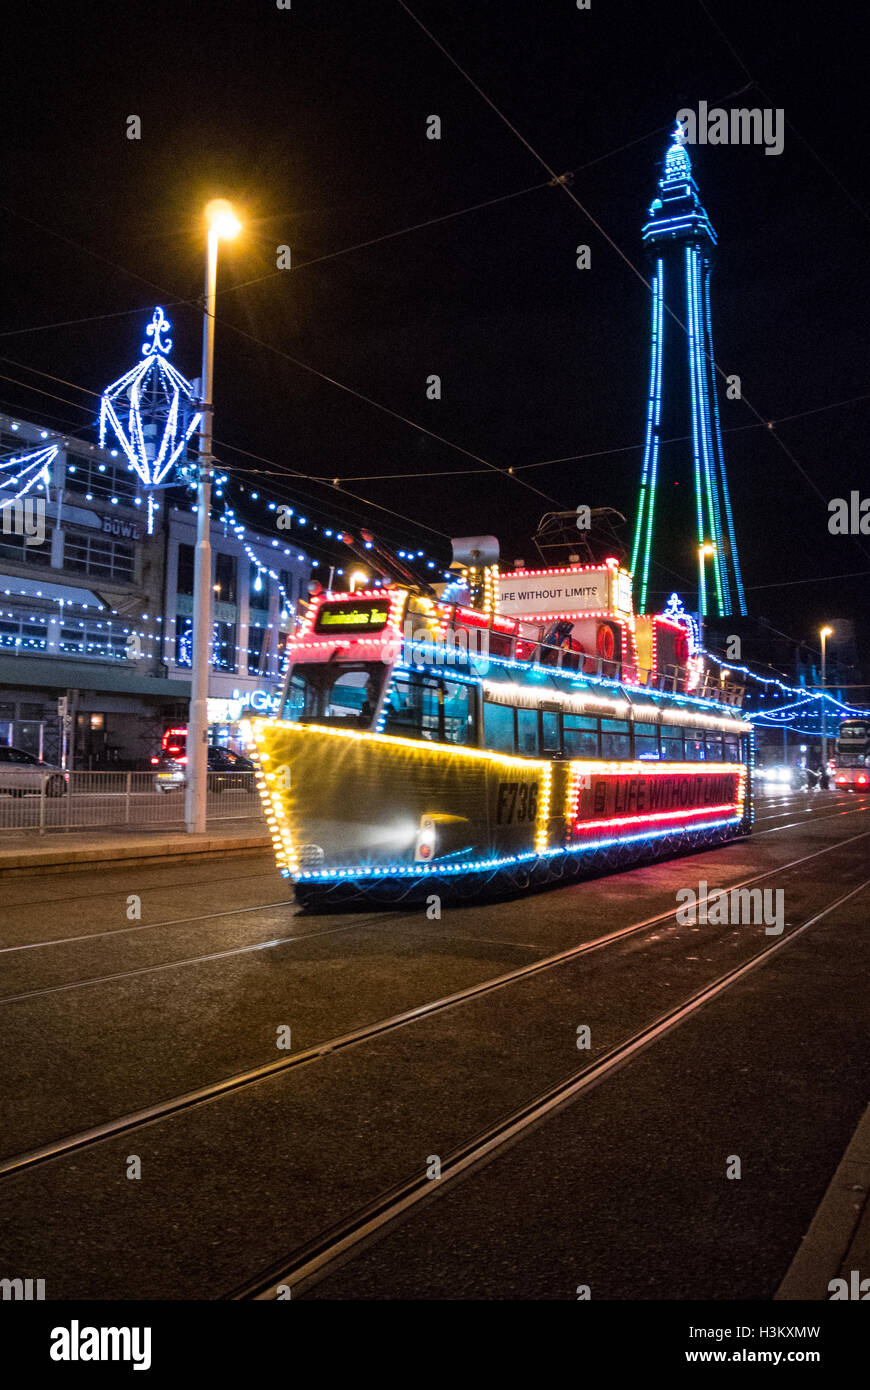 Un tram decorata come una barca durante le luminarie di Blackpool con la Blackpool Tower in background Foto Stock